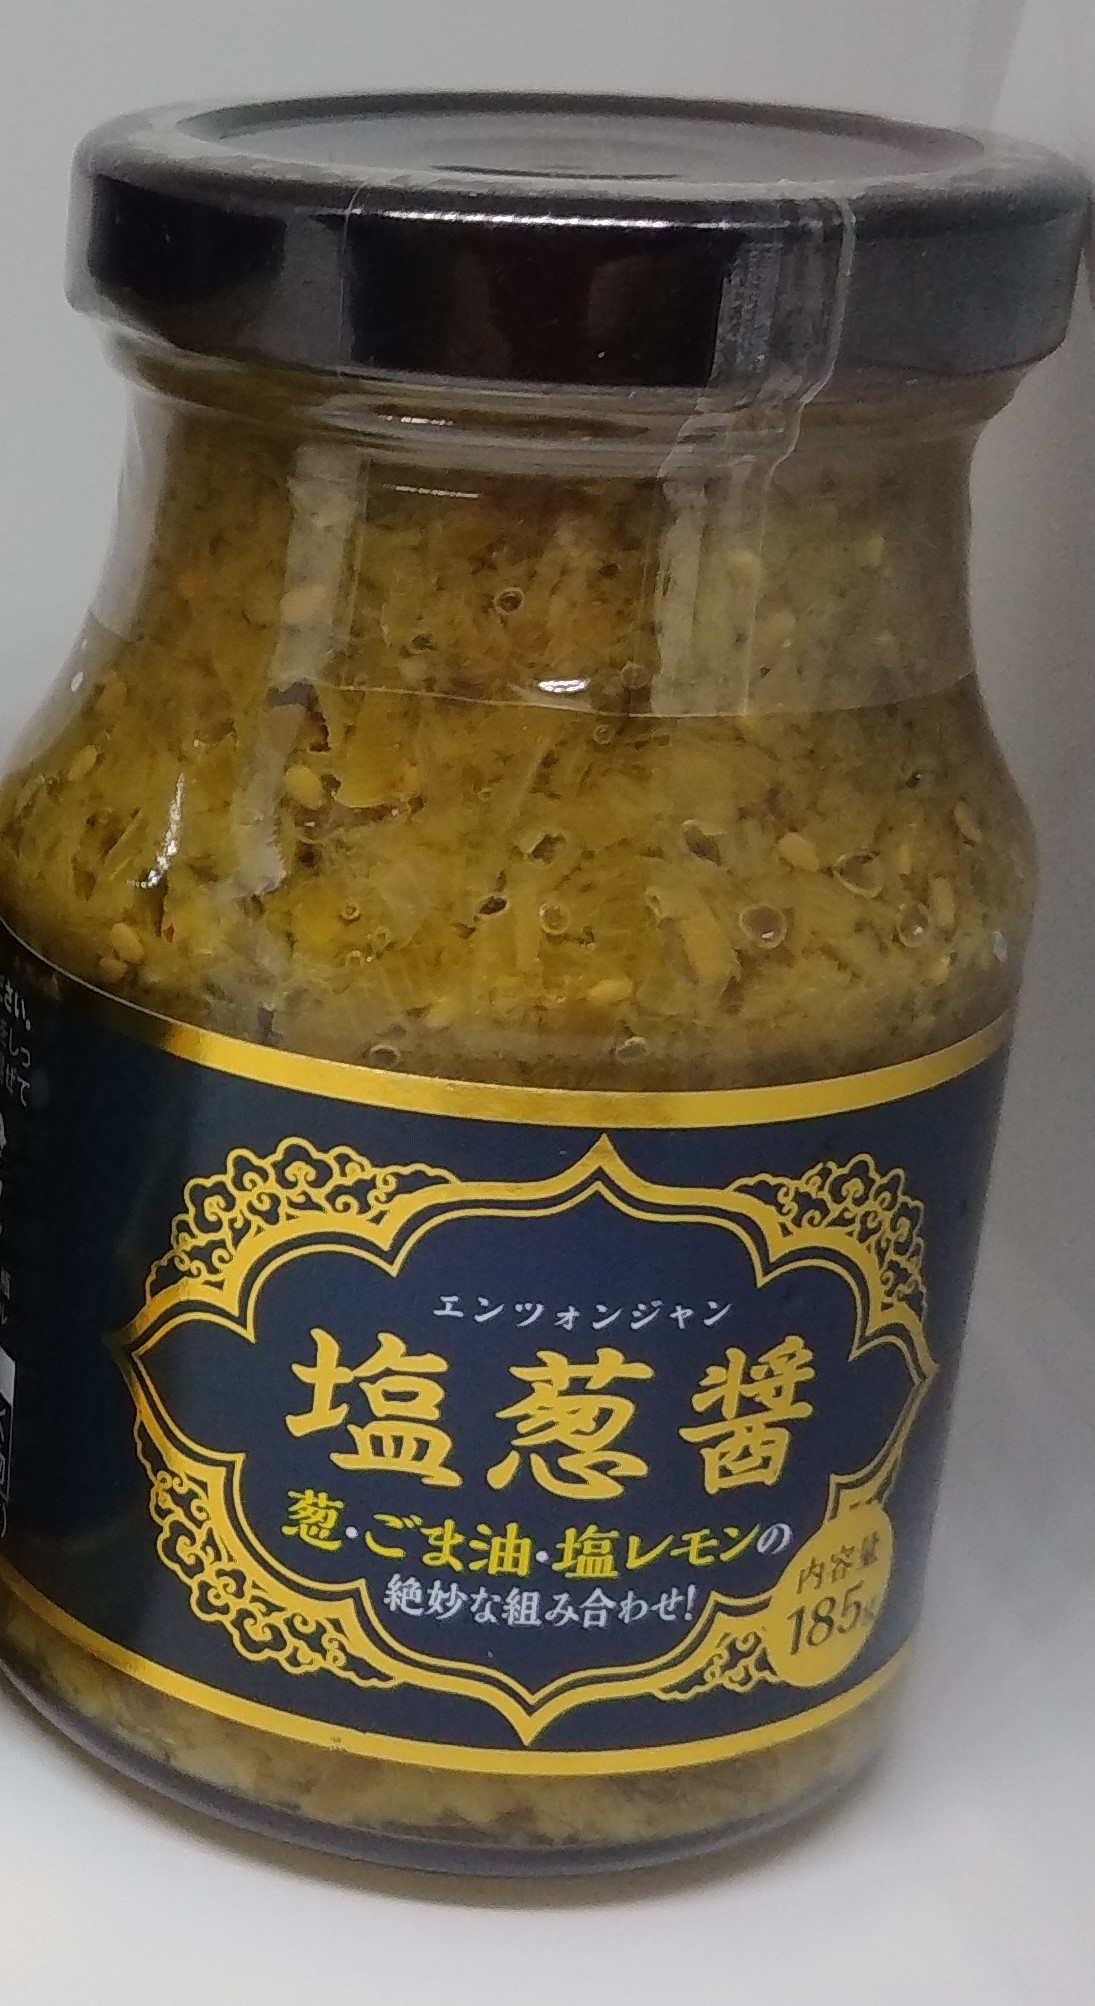 塩葱醤(エンツォンジャン)